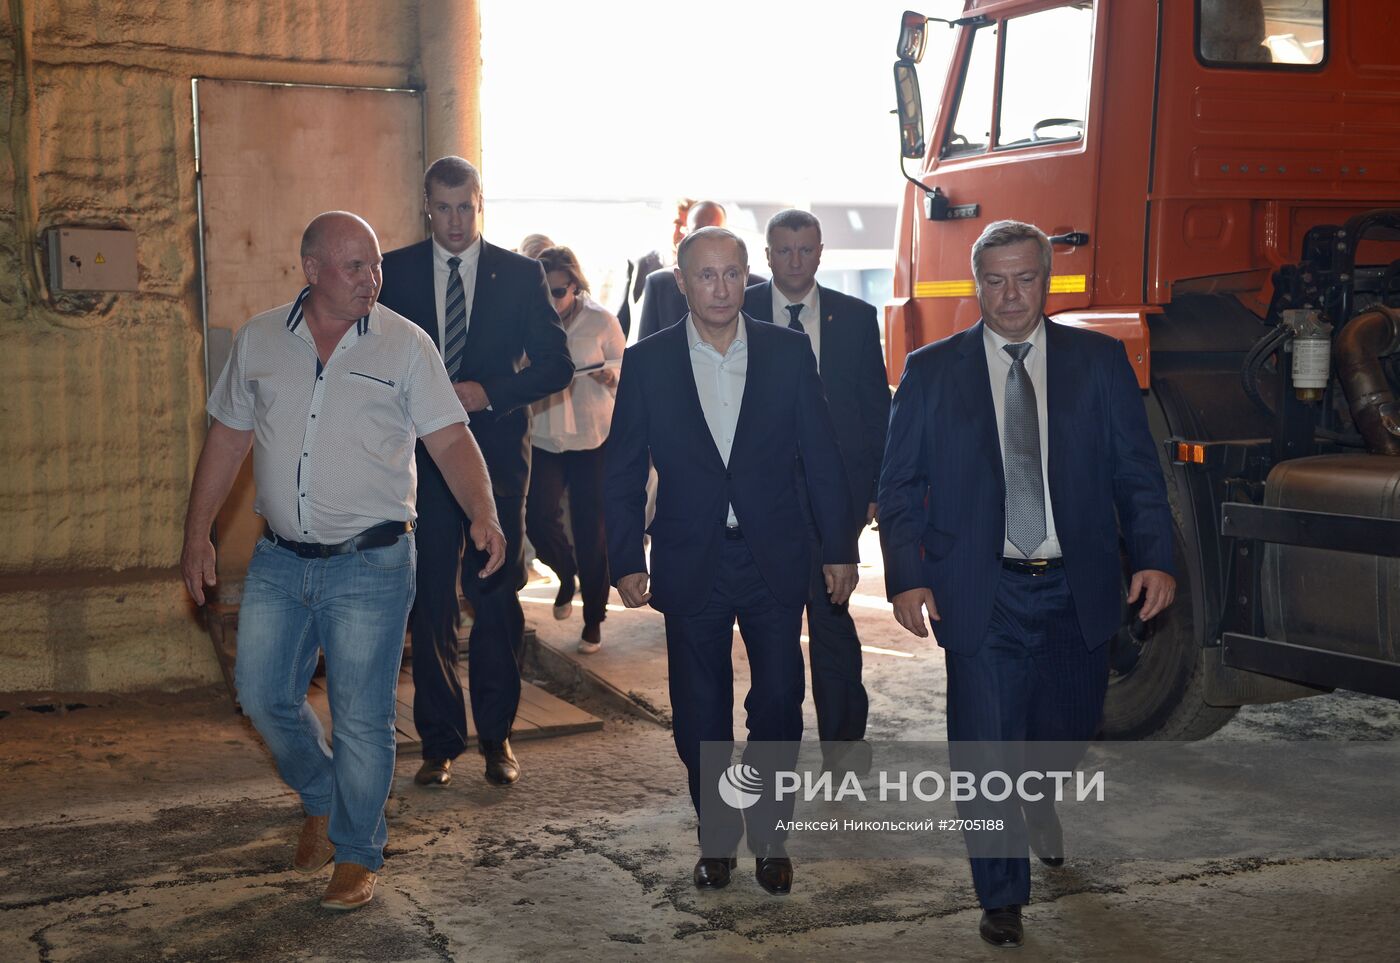 Рабочая поездка президента РФ В.Путина в Ростовскую область